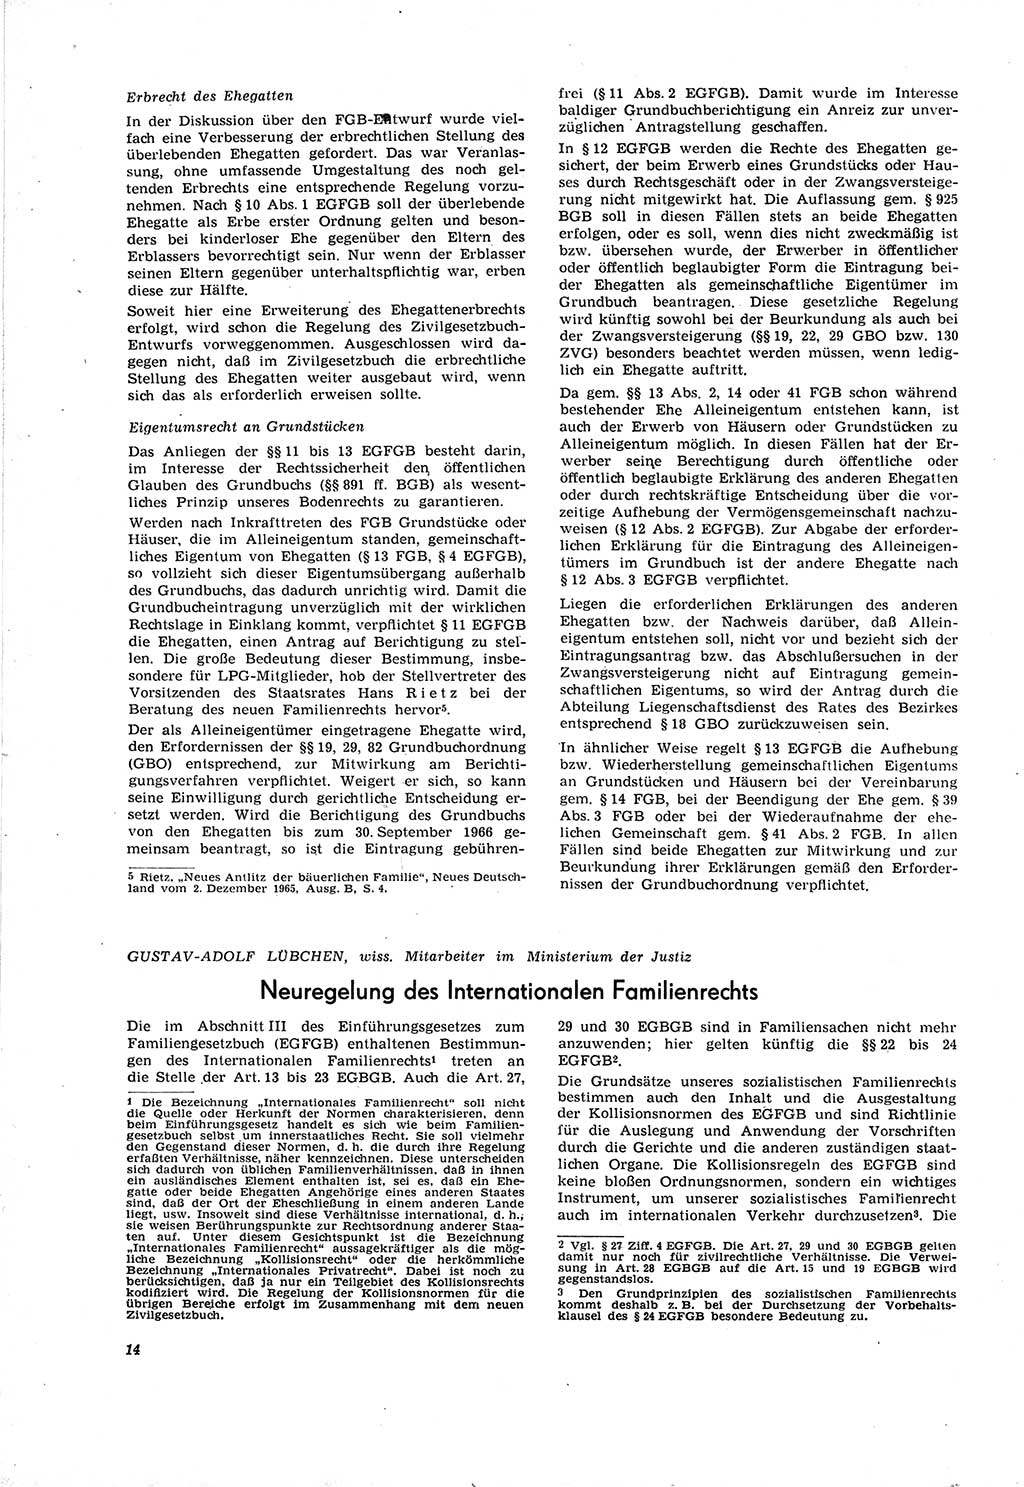 Neue Justiz (NJ), Zeitschrift für Recht und Rechtswissenschaft [Deutsche Demokratische Republik (DDR)], 20. Jahrgang 1966, Seite 14 (NJ DDR 1966, S. 14)